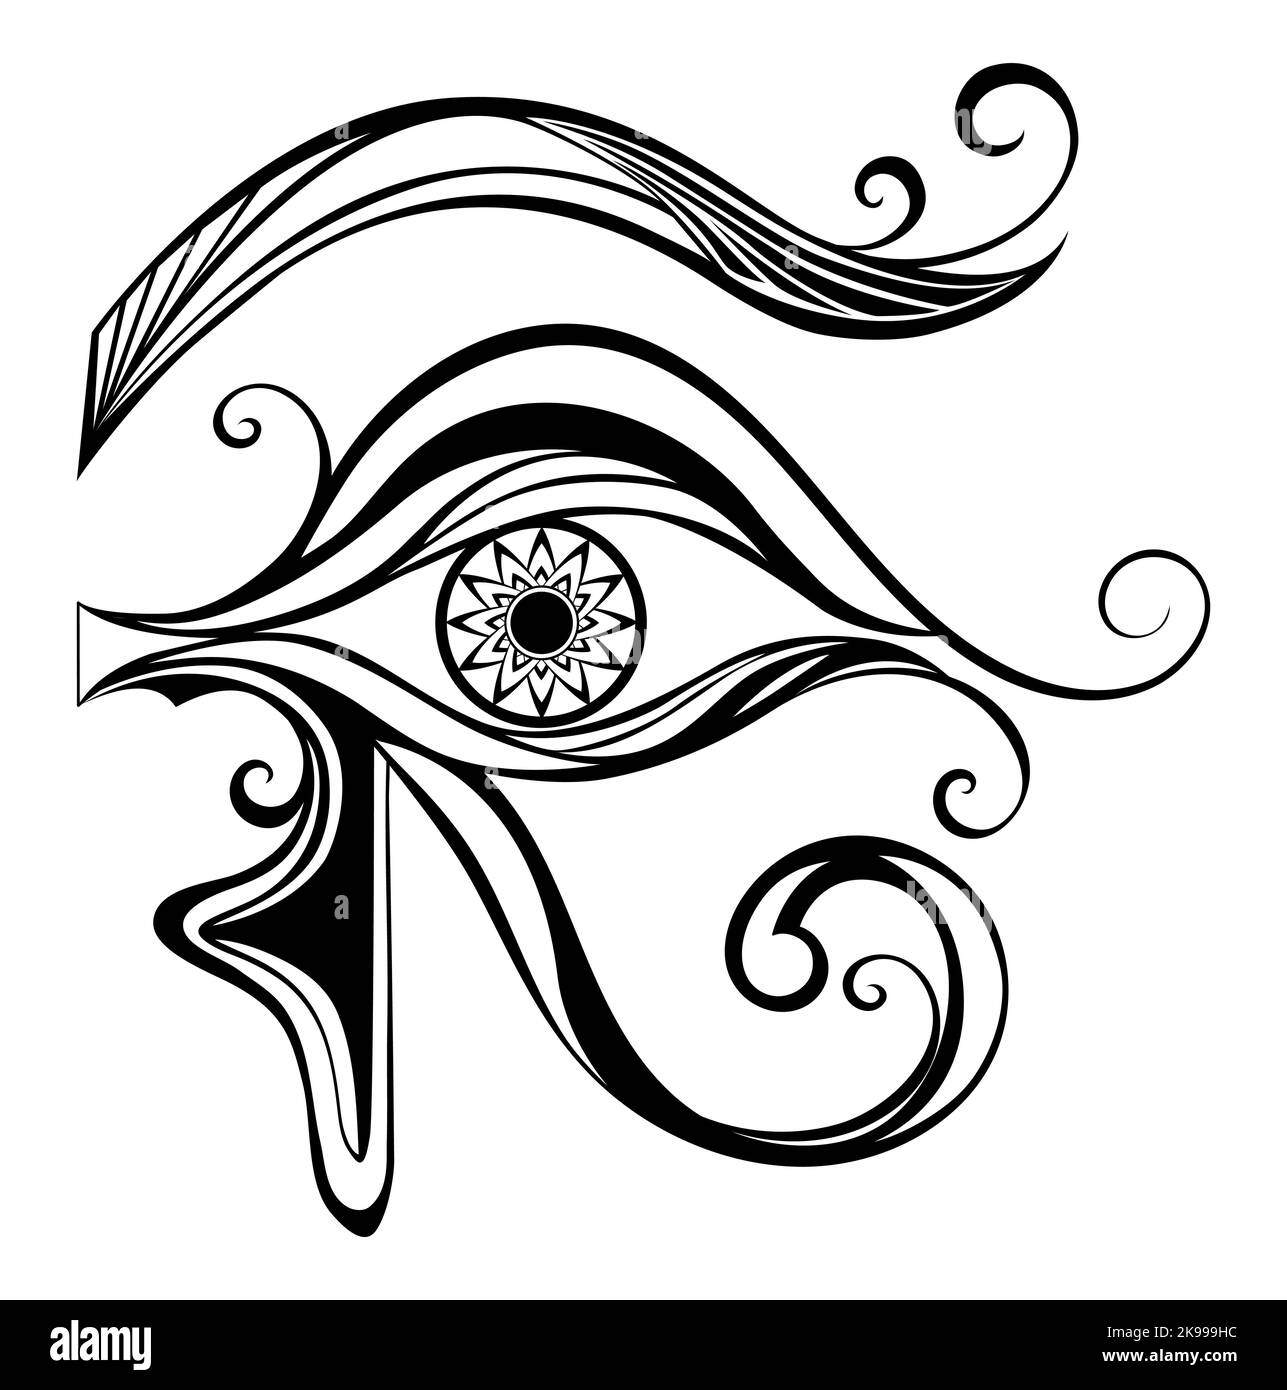 Nero, contorno, simbolo egiziano dell'occhio di Horus su sfondo bianco. Simbolo egiziano. Illustrazione Vettoriale